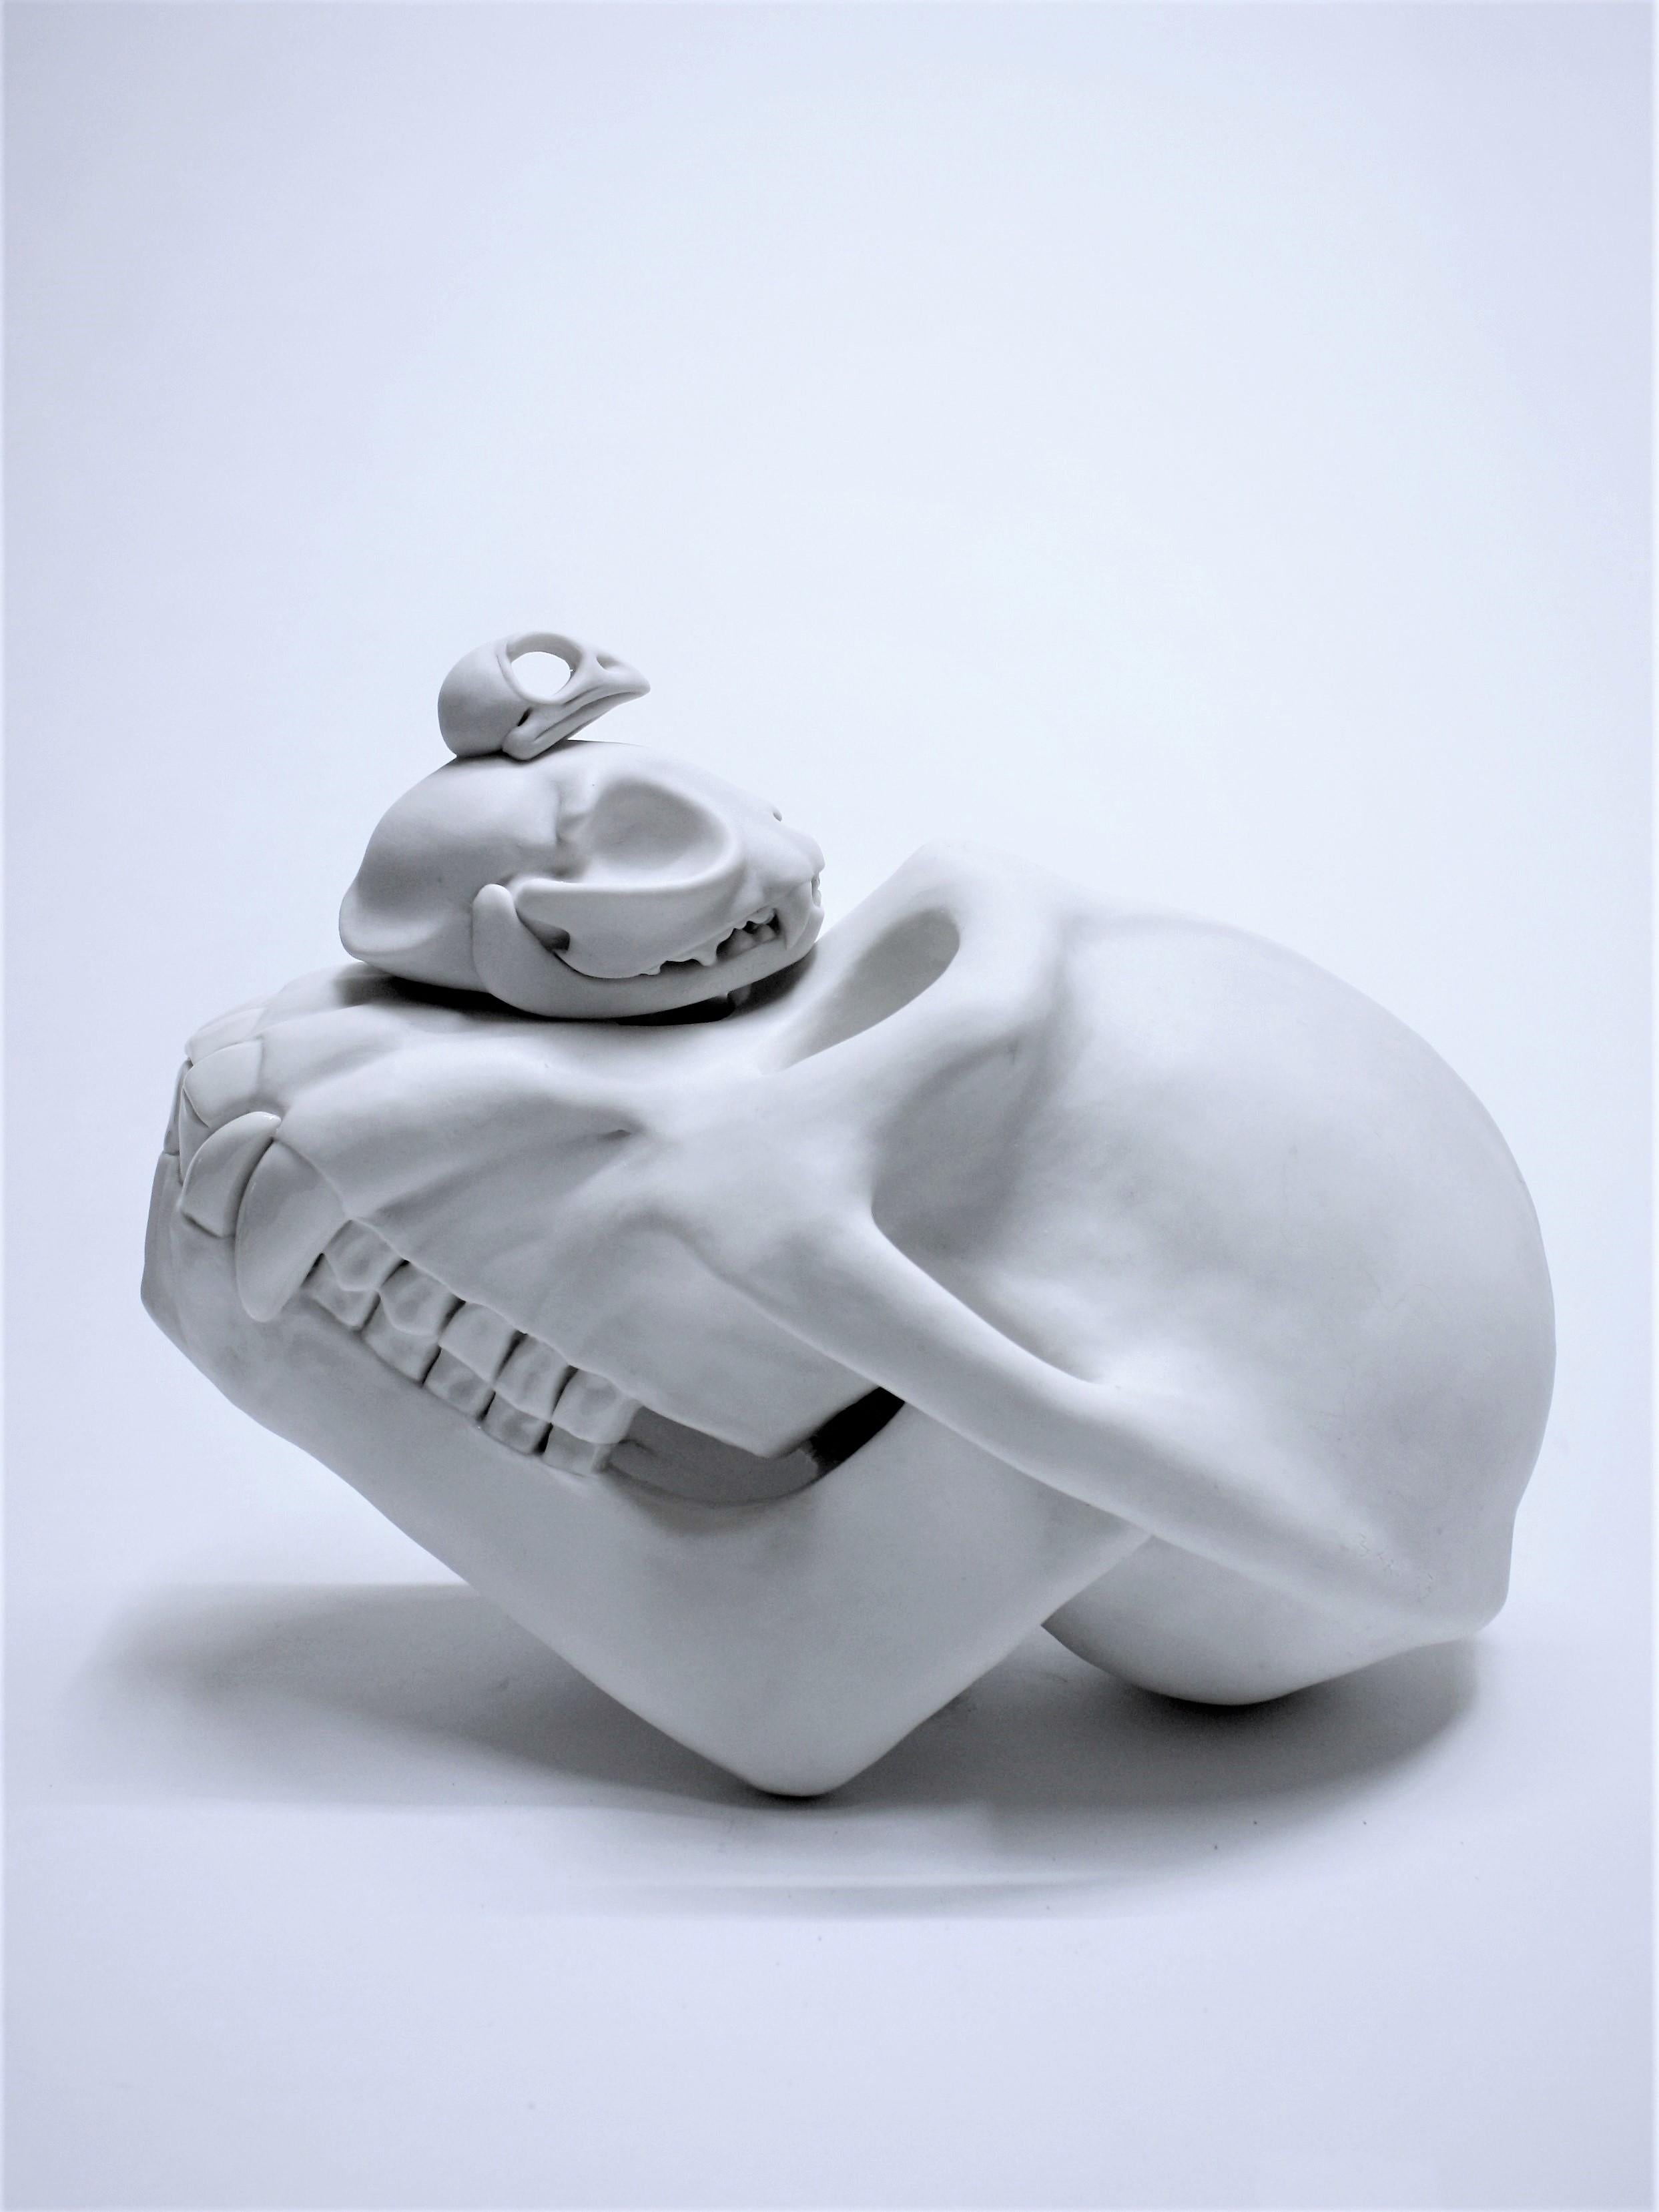 Zeitgenössische Porzellanskulptur mit weißem Totenkopf, Tier, Bethany Krull, weibliche Künstlerin